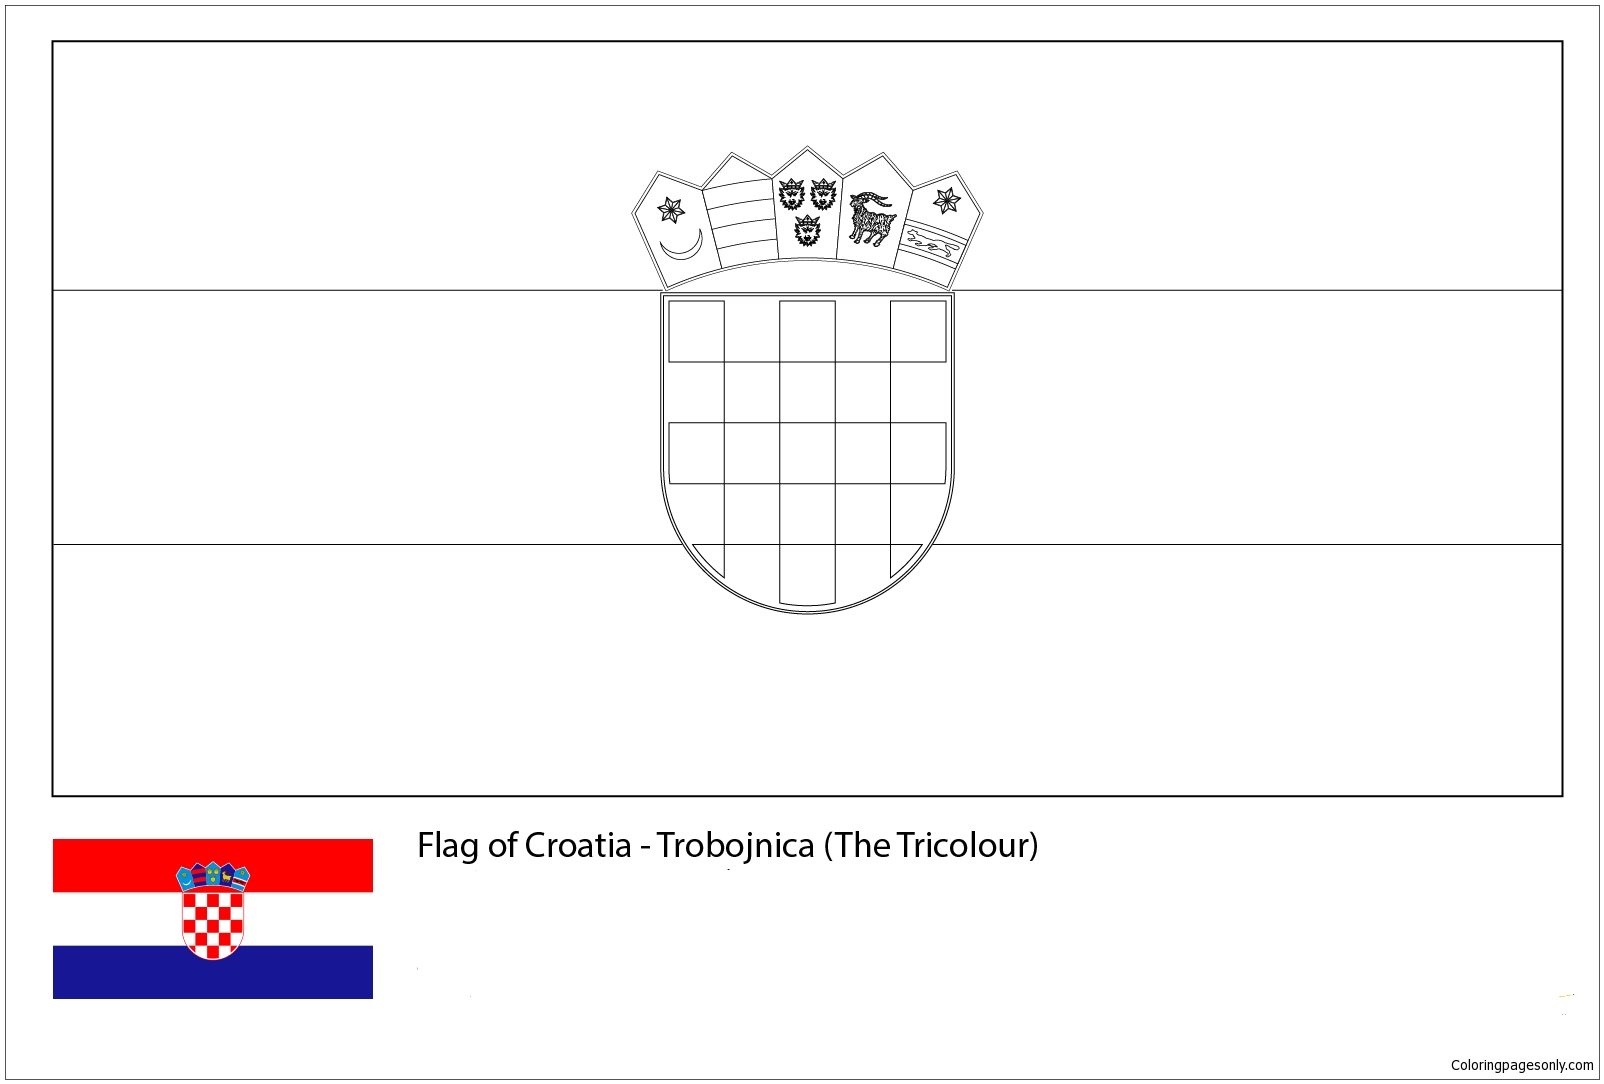 克罗地亚国旗-2018 年世界杯 2018 年世界杯旗帜